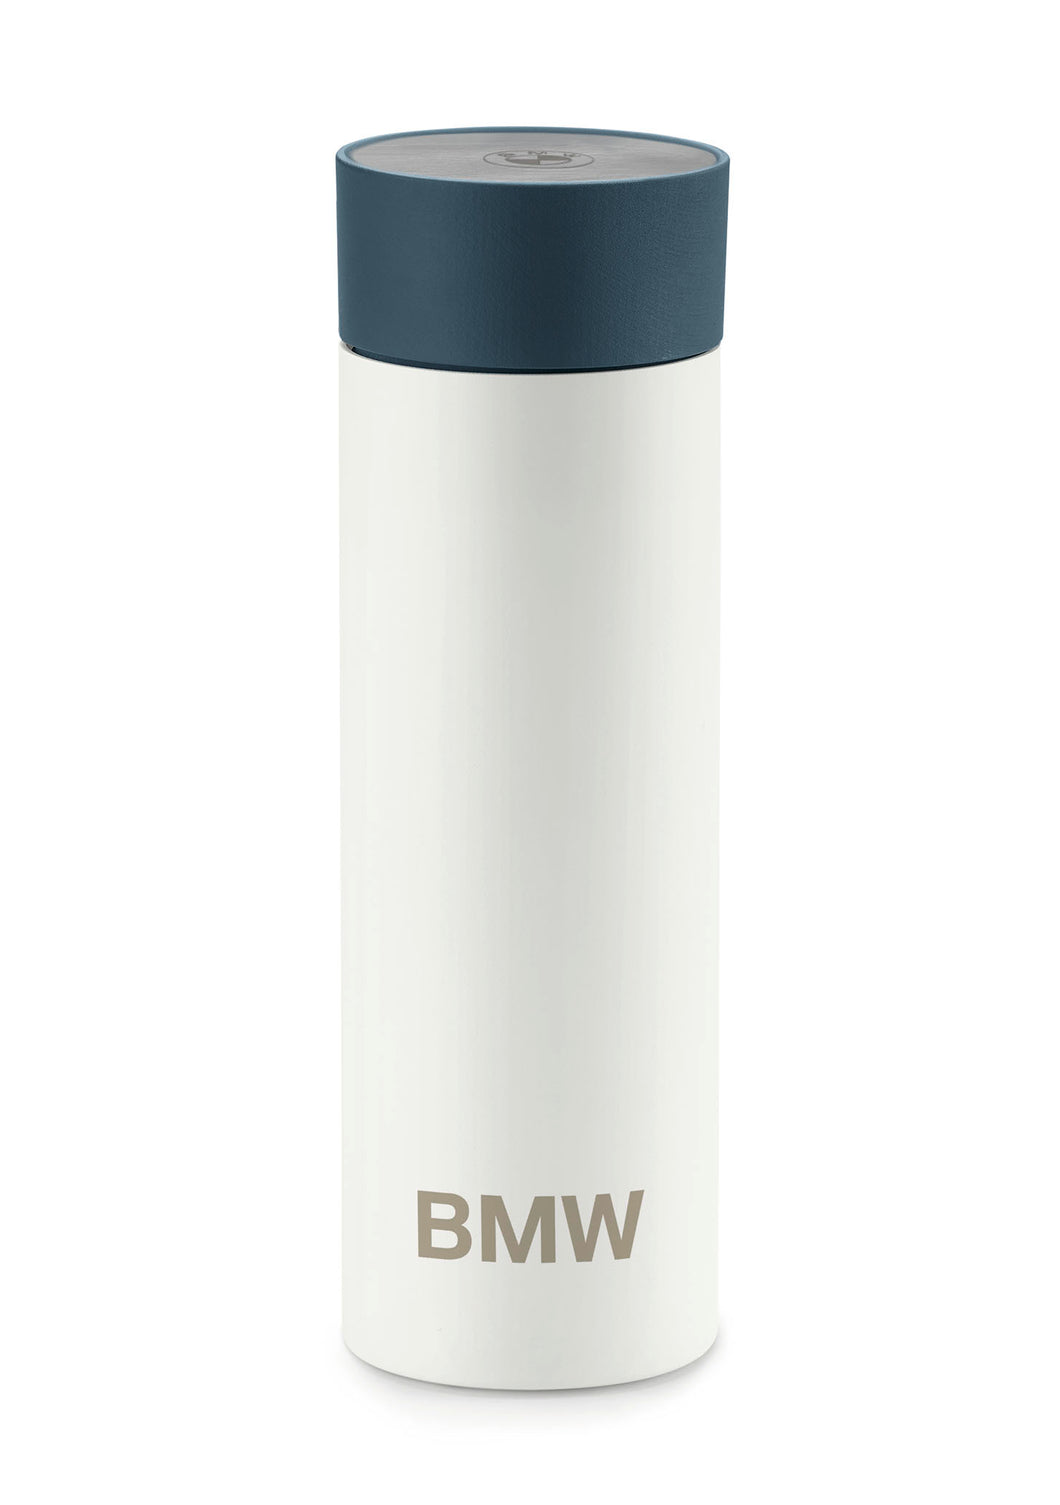 BMW Thermo Mug Design